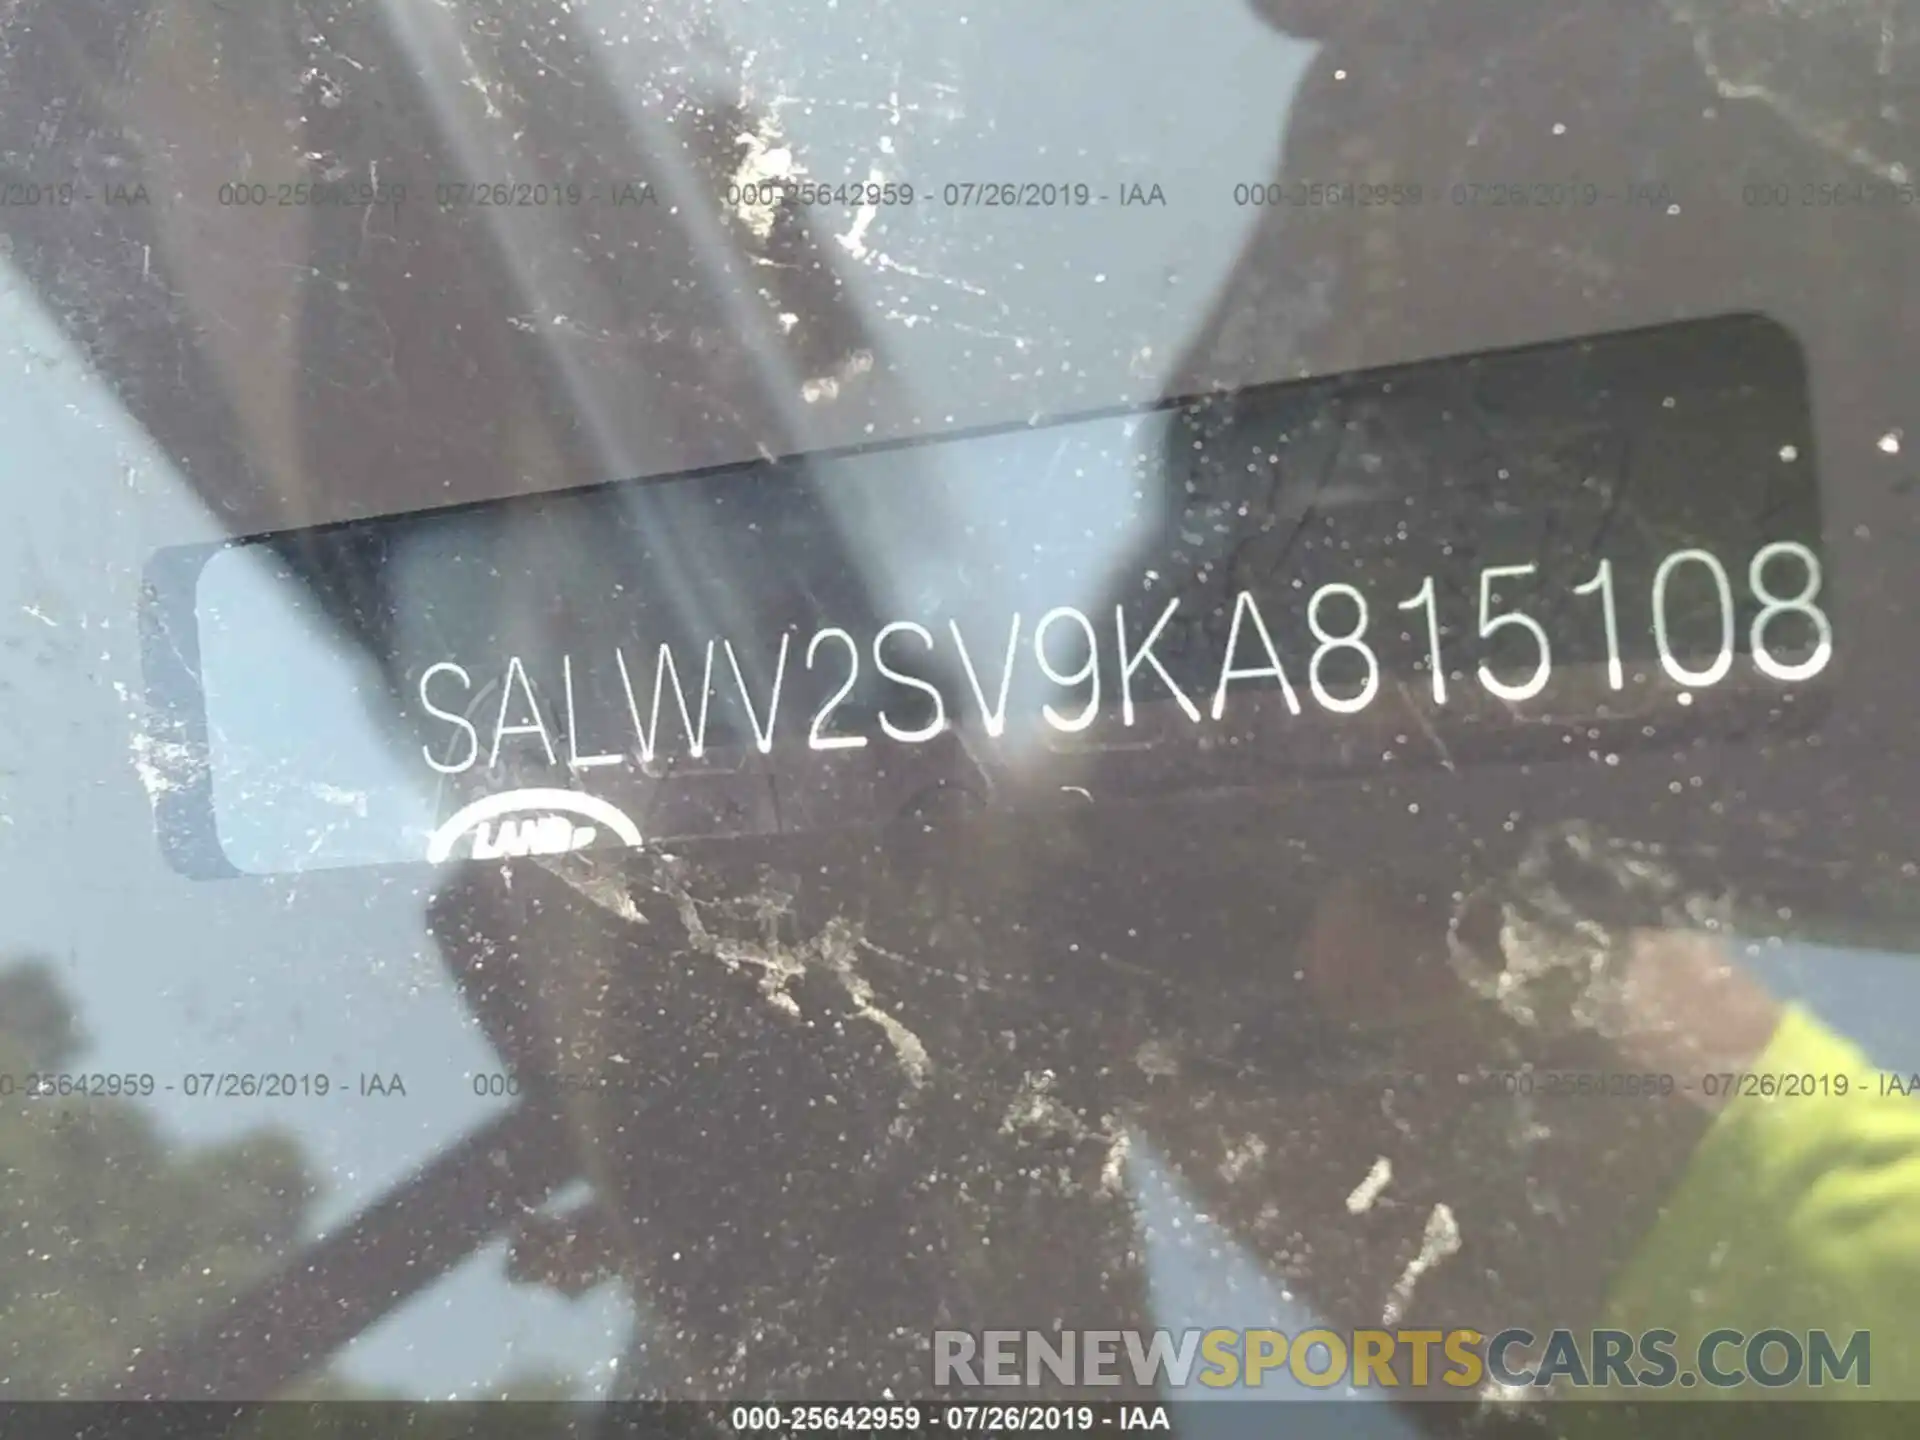 9 Фотография поврежденного автомобиля SALWV2SV9KA815108 LAND ROVER RANGE ROVER SPORT 2019